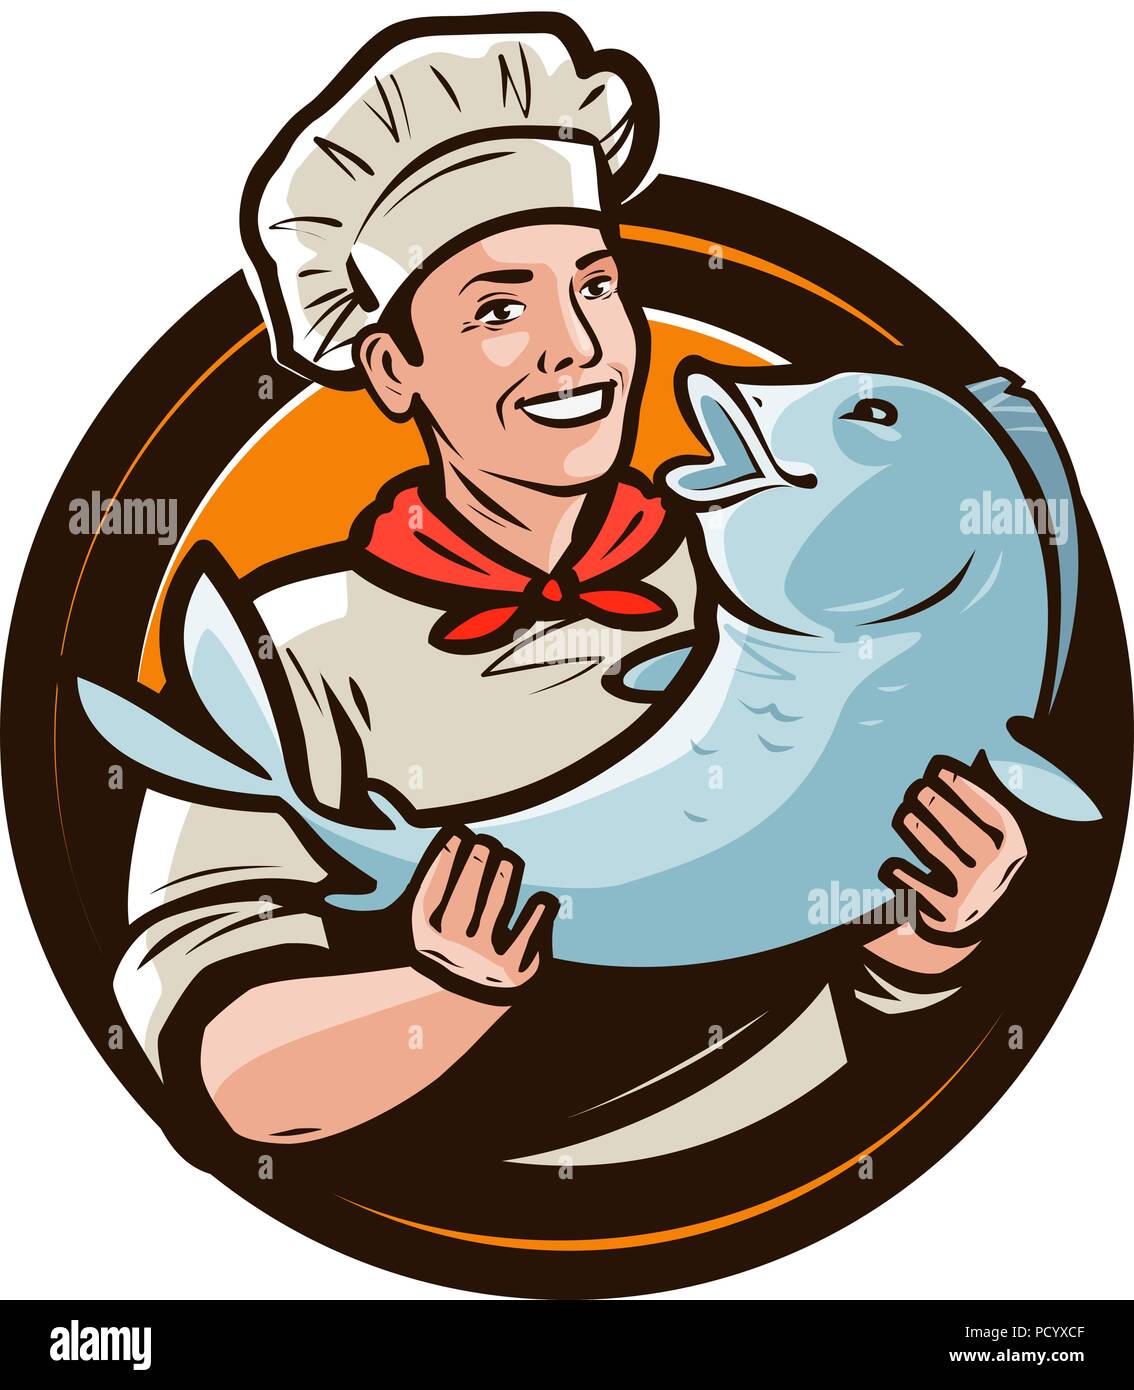 Cheerful cook avec le poisson. Les fruits de mer, de l'alimentation logo ou label. Cartoon vector illustration Illustration de Vecteur